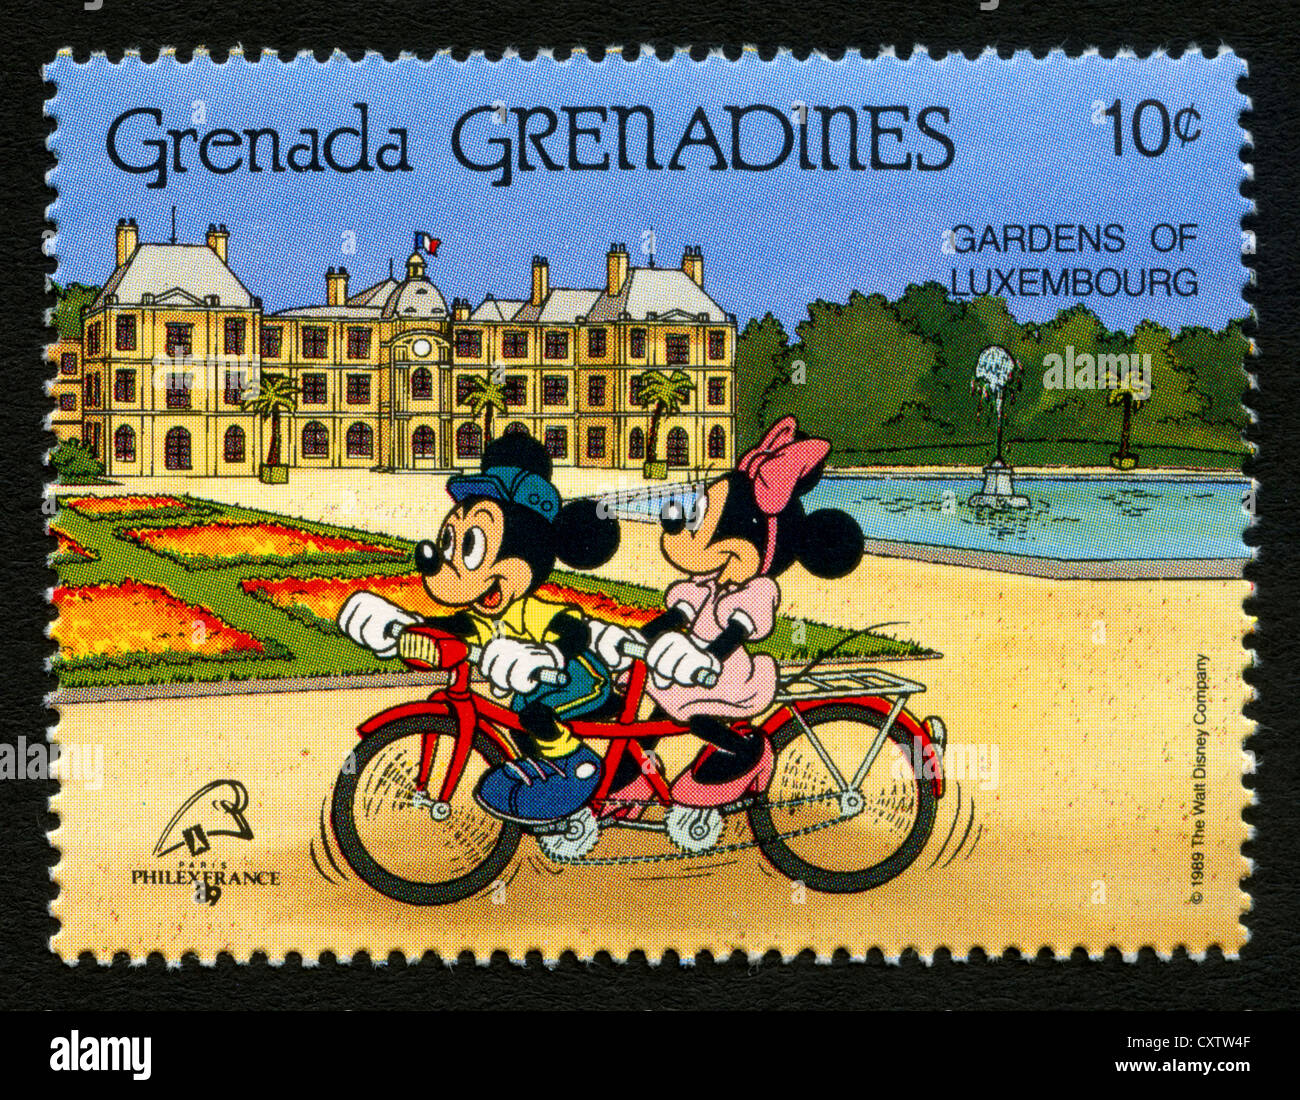 La Grenade - Timbres-poste de personnages de dessins animés Disney - Mickey et Minnie à Paris Banque D'Images